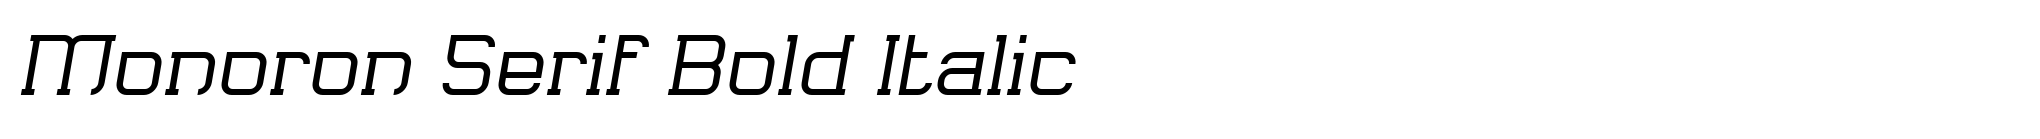 Monoron Serif Bold Italic image